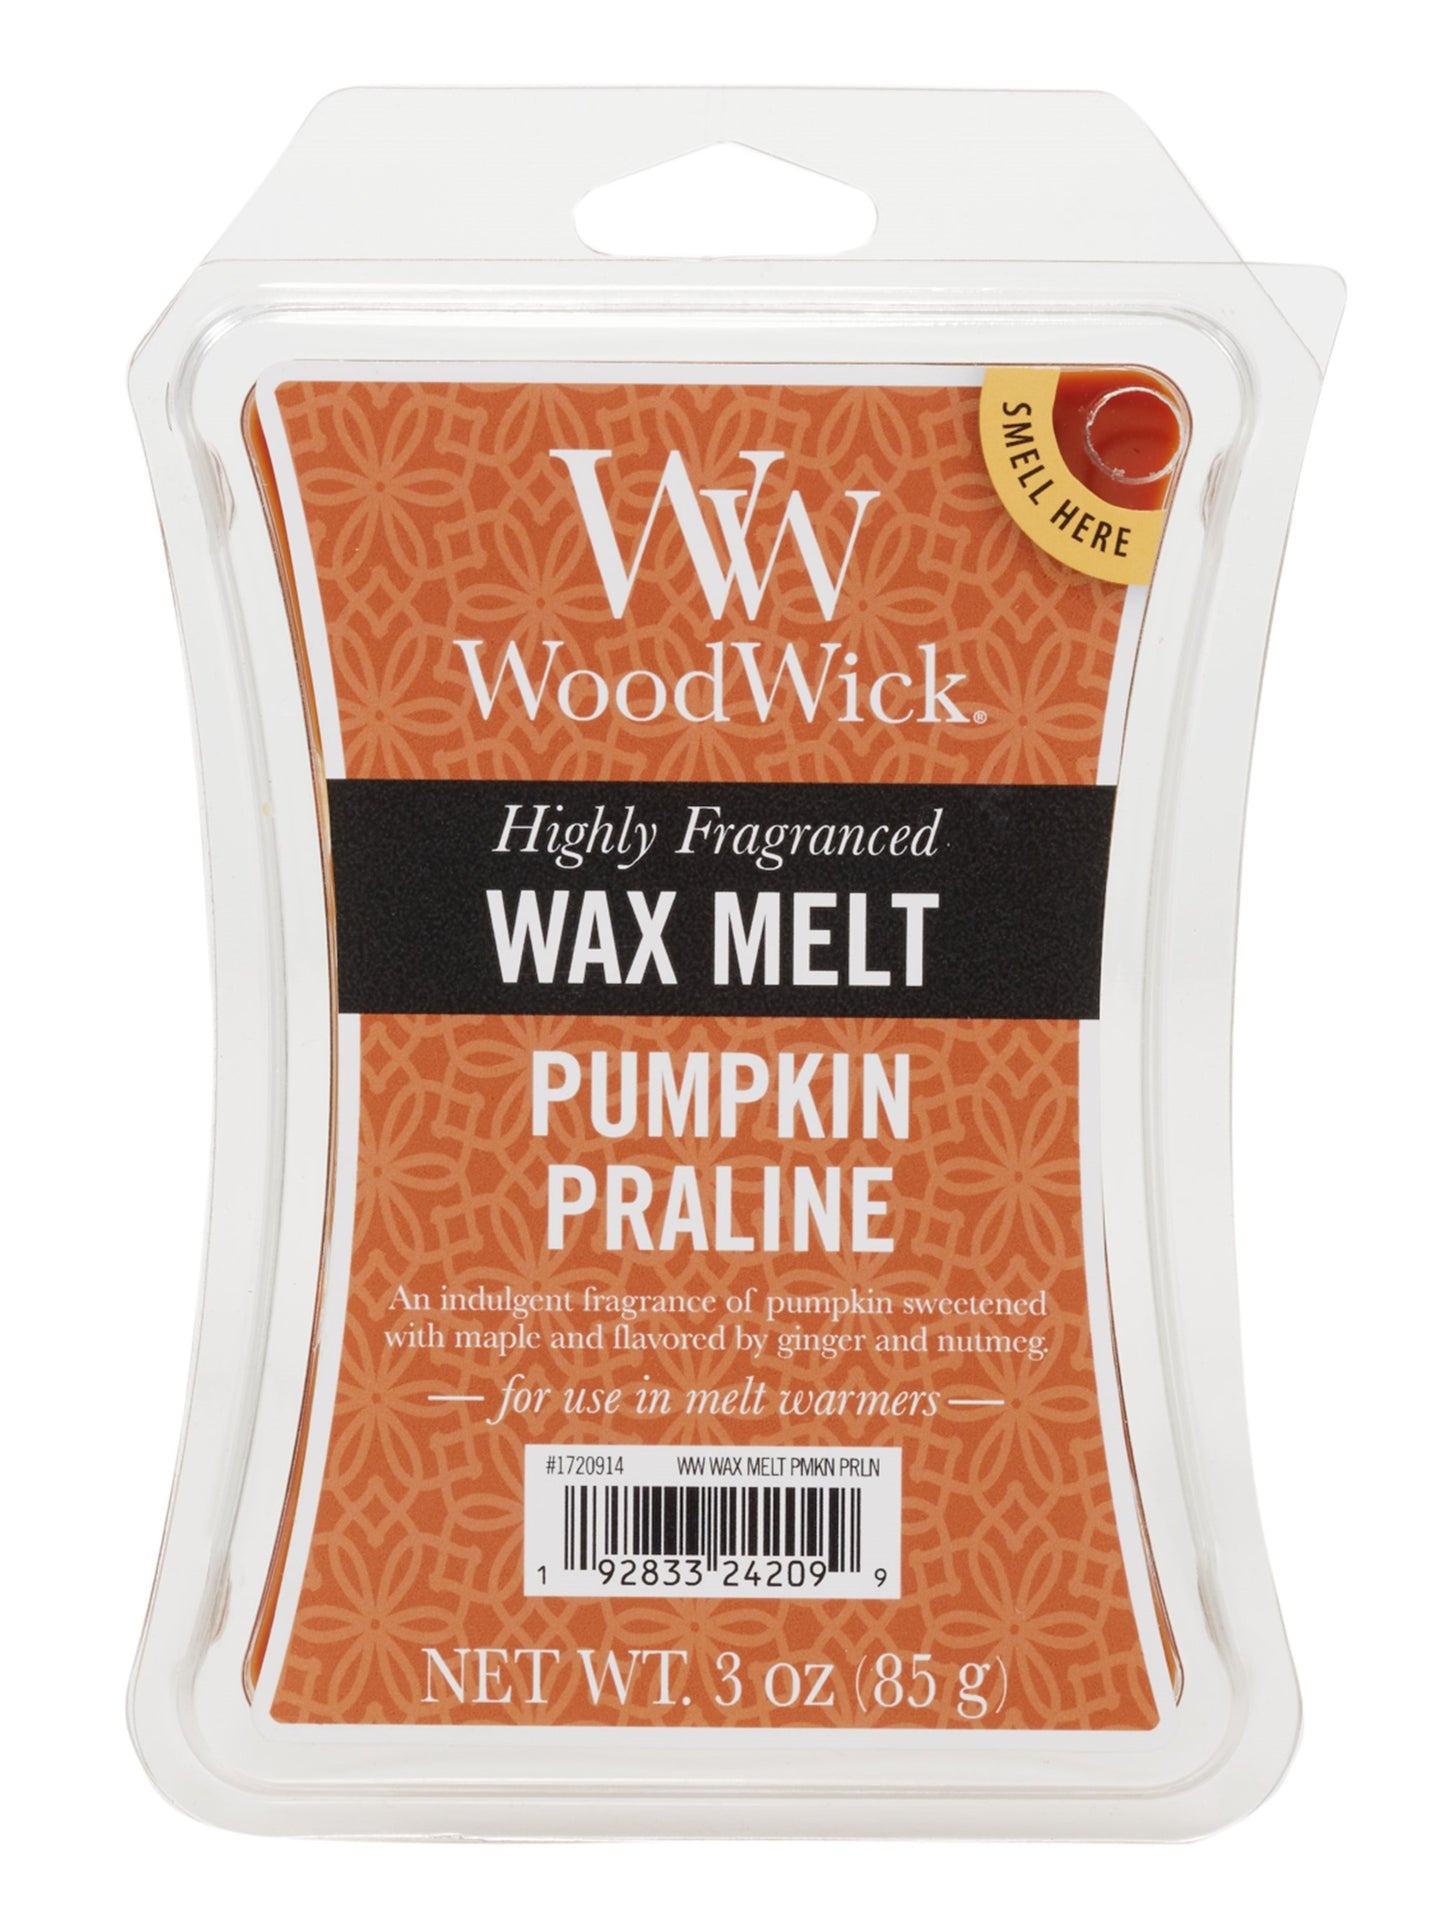 PUMPKIN PRALINE WoodWick 3oz Wax Melt